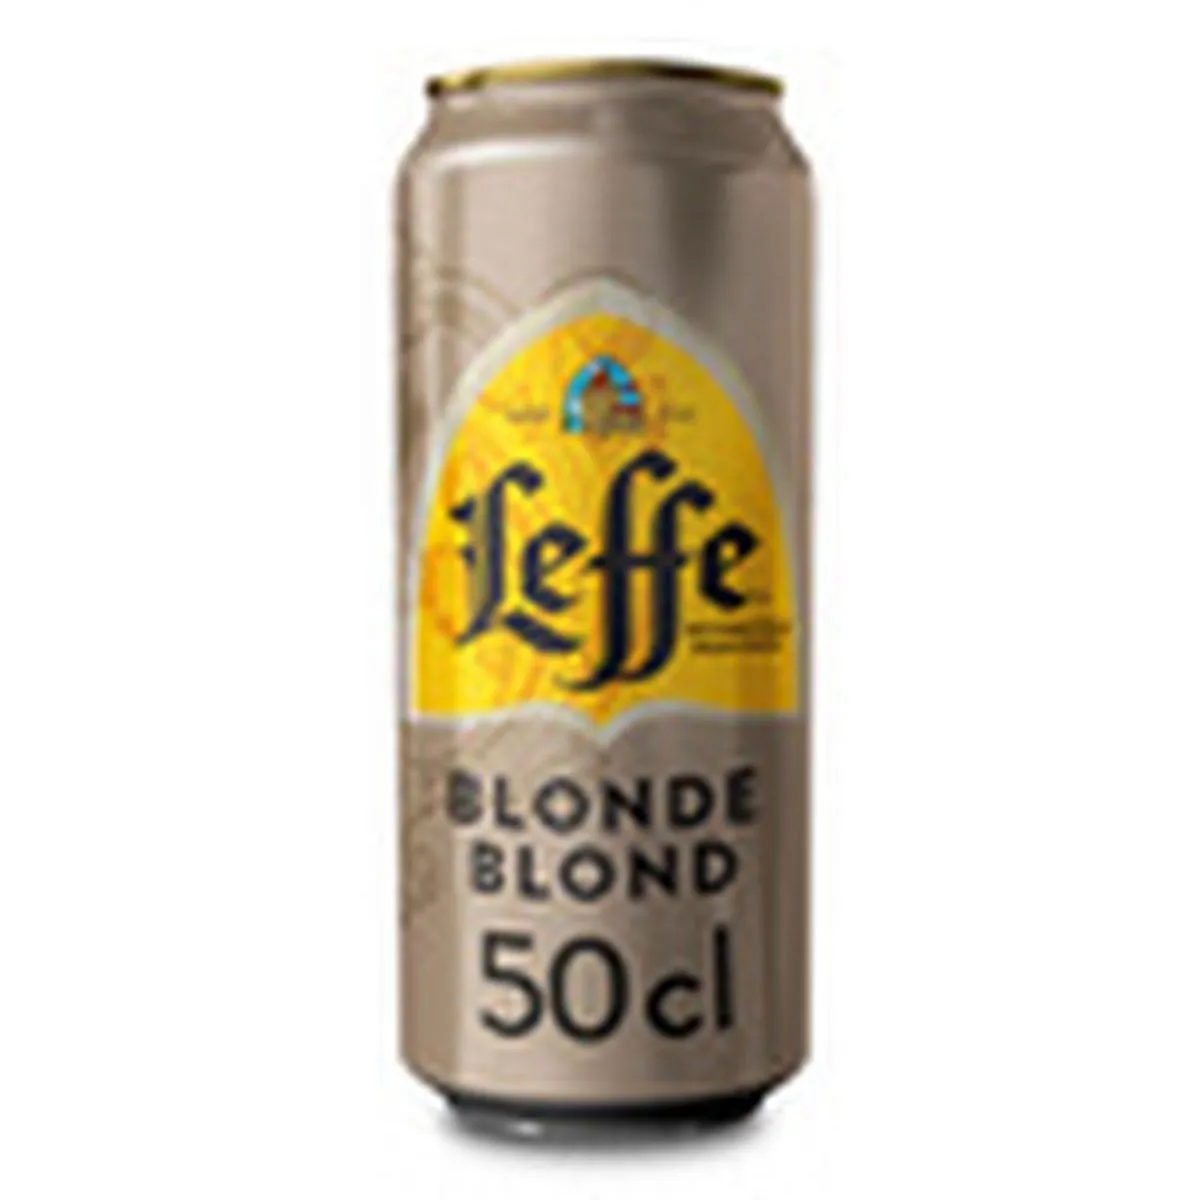 bière leffe blonde